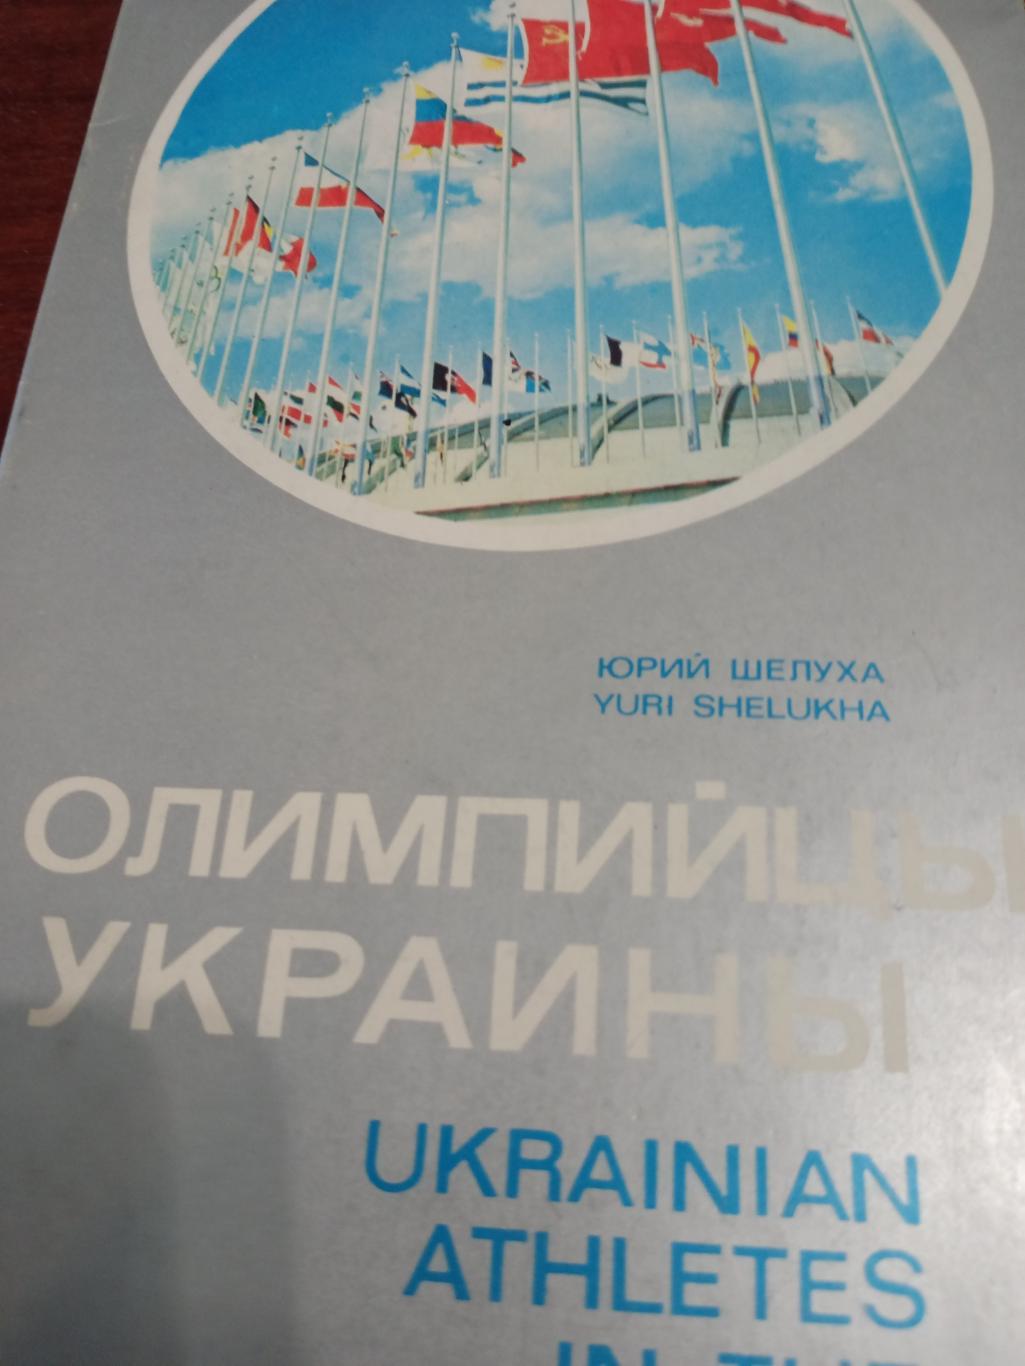 Олимпийцы Украины. Издание 1979 года